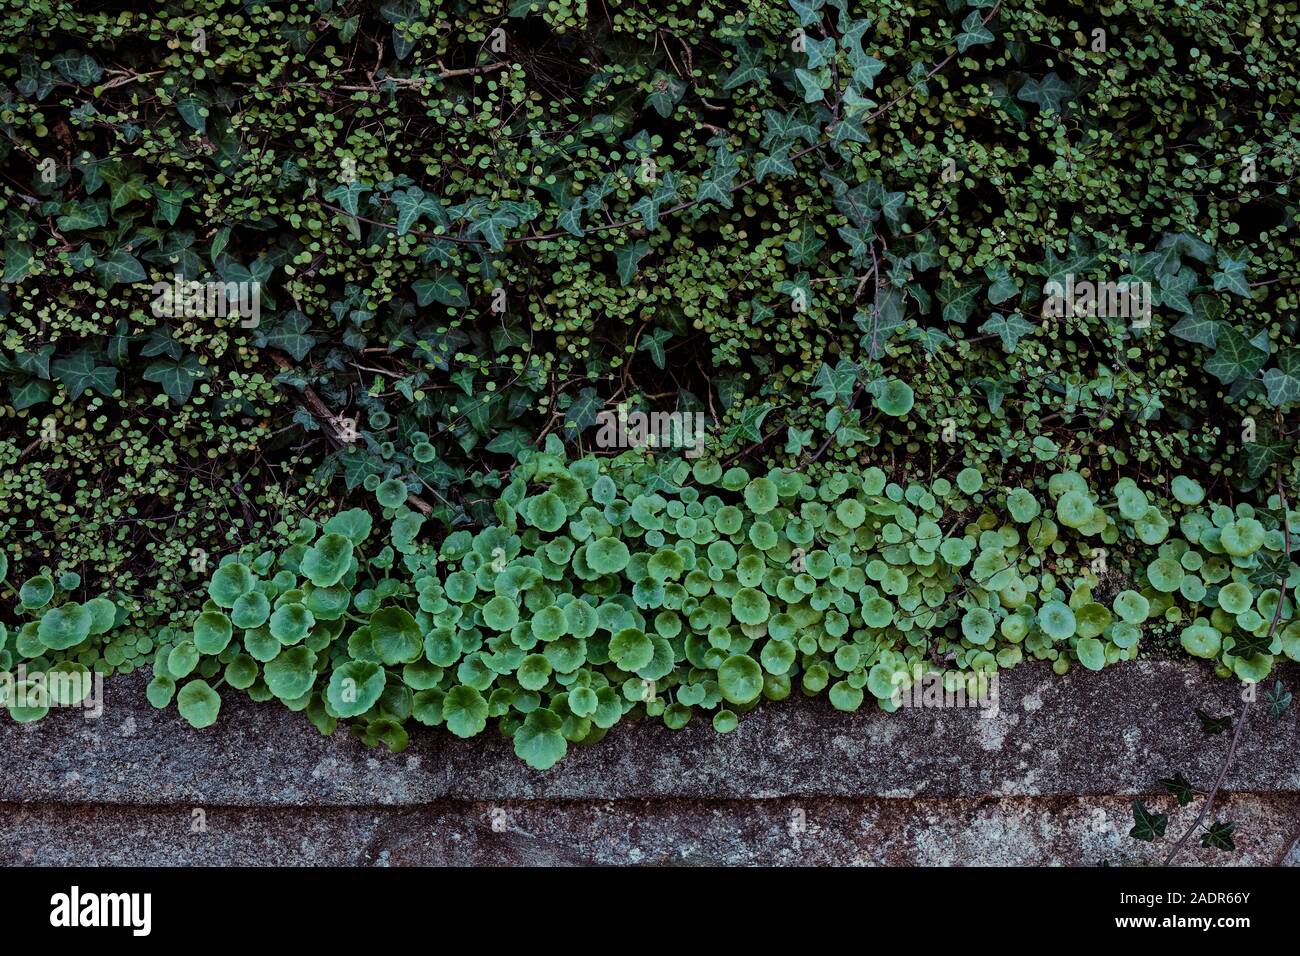 Dettagli di una parete verde con diversi tipi di piante Foto Stock